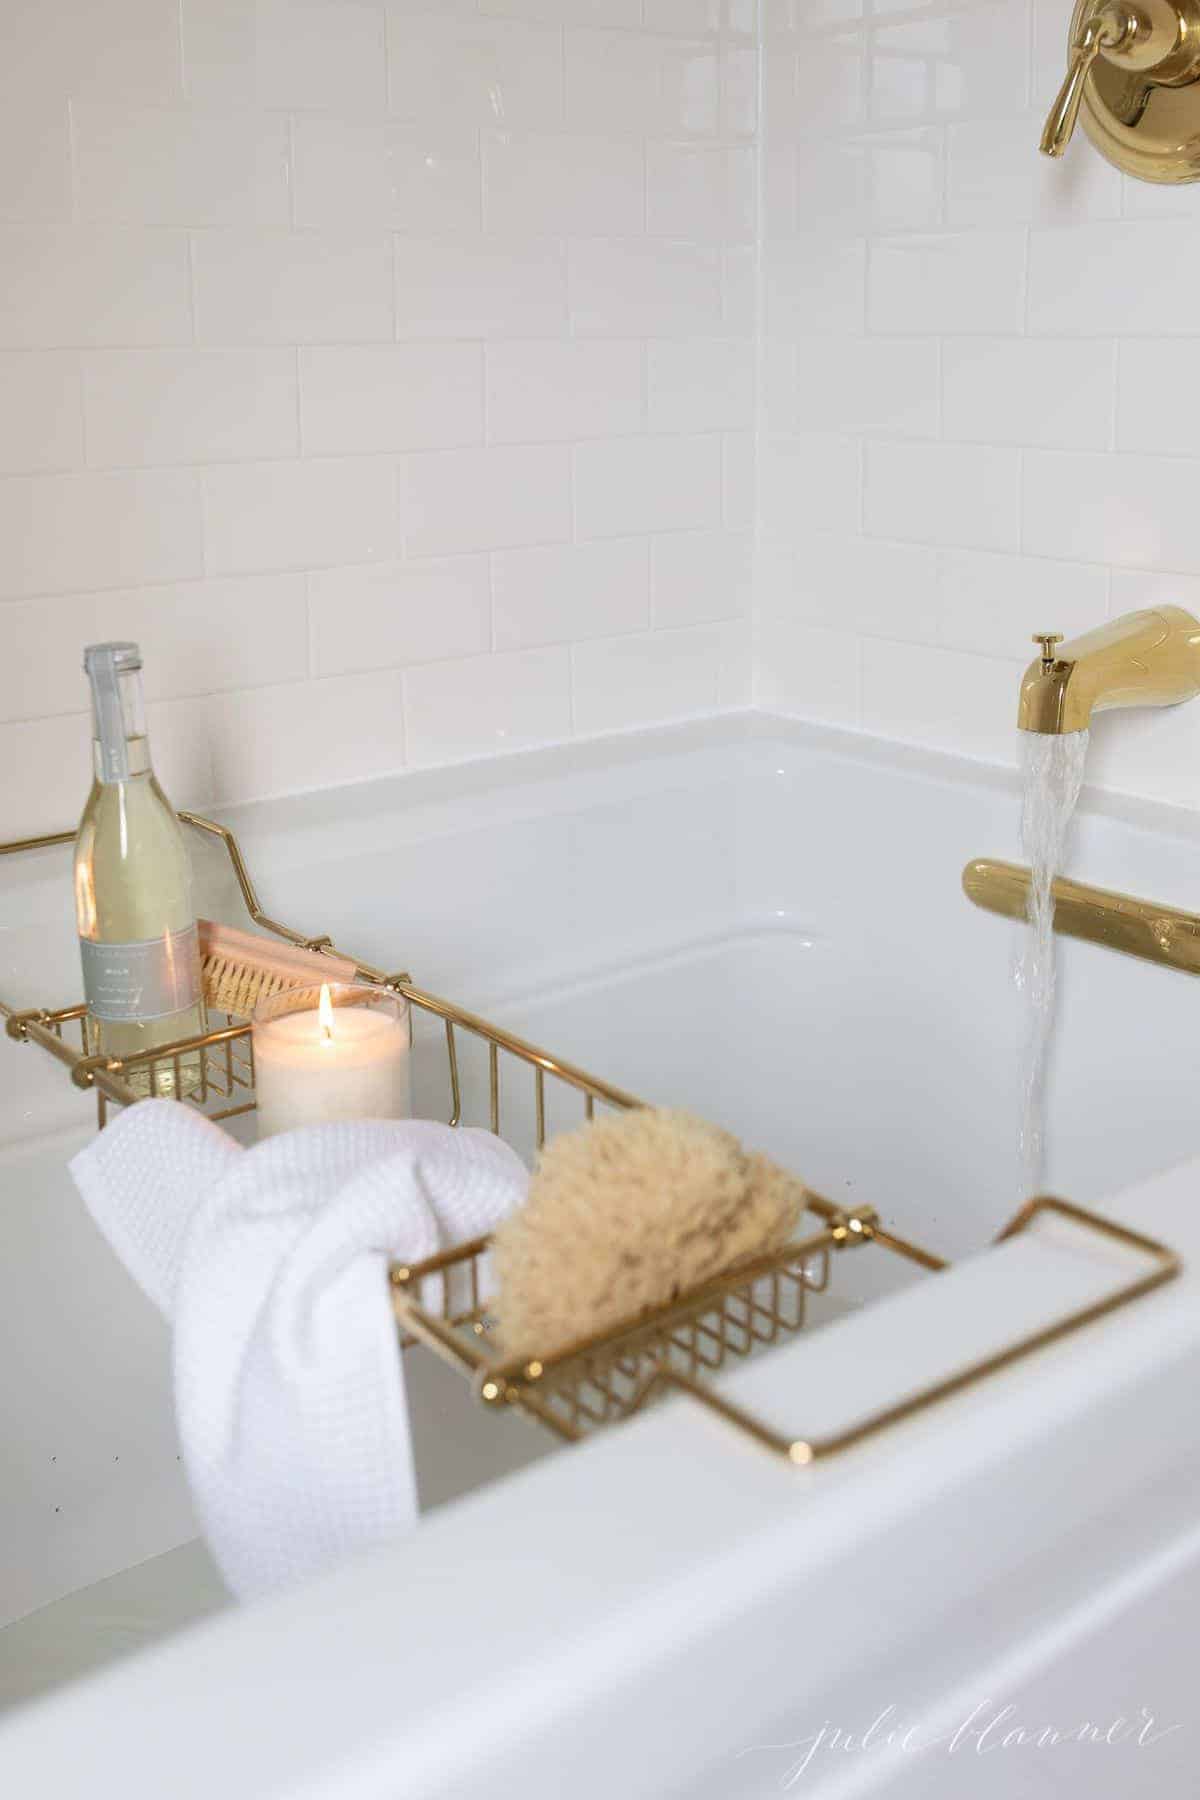 白色的浴缸被白色的地铁瓷砖和黄铜配件包围。